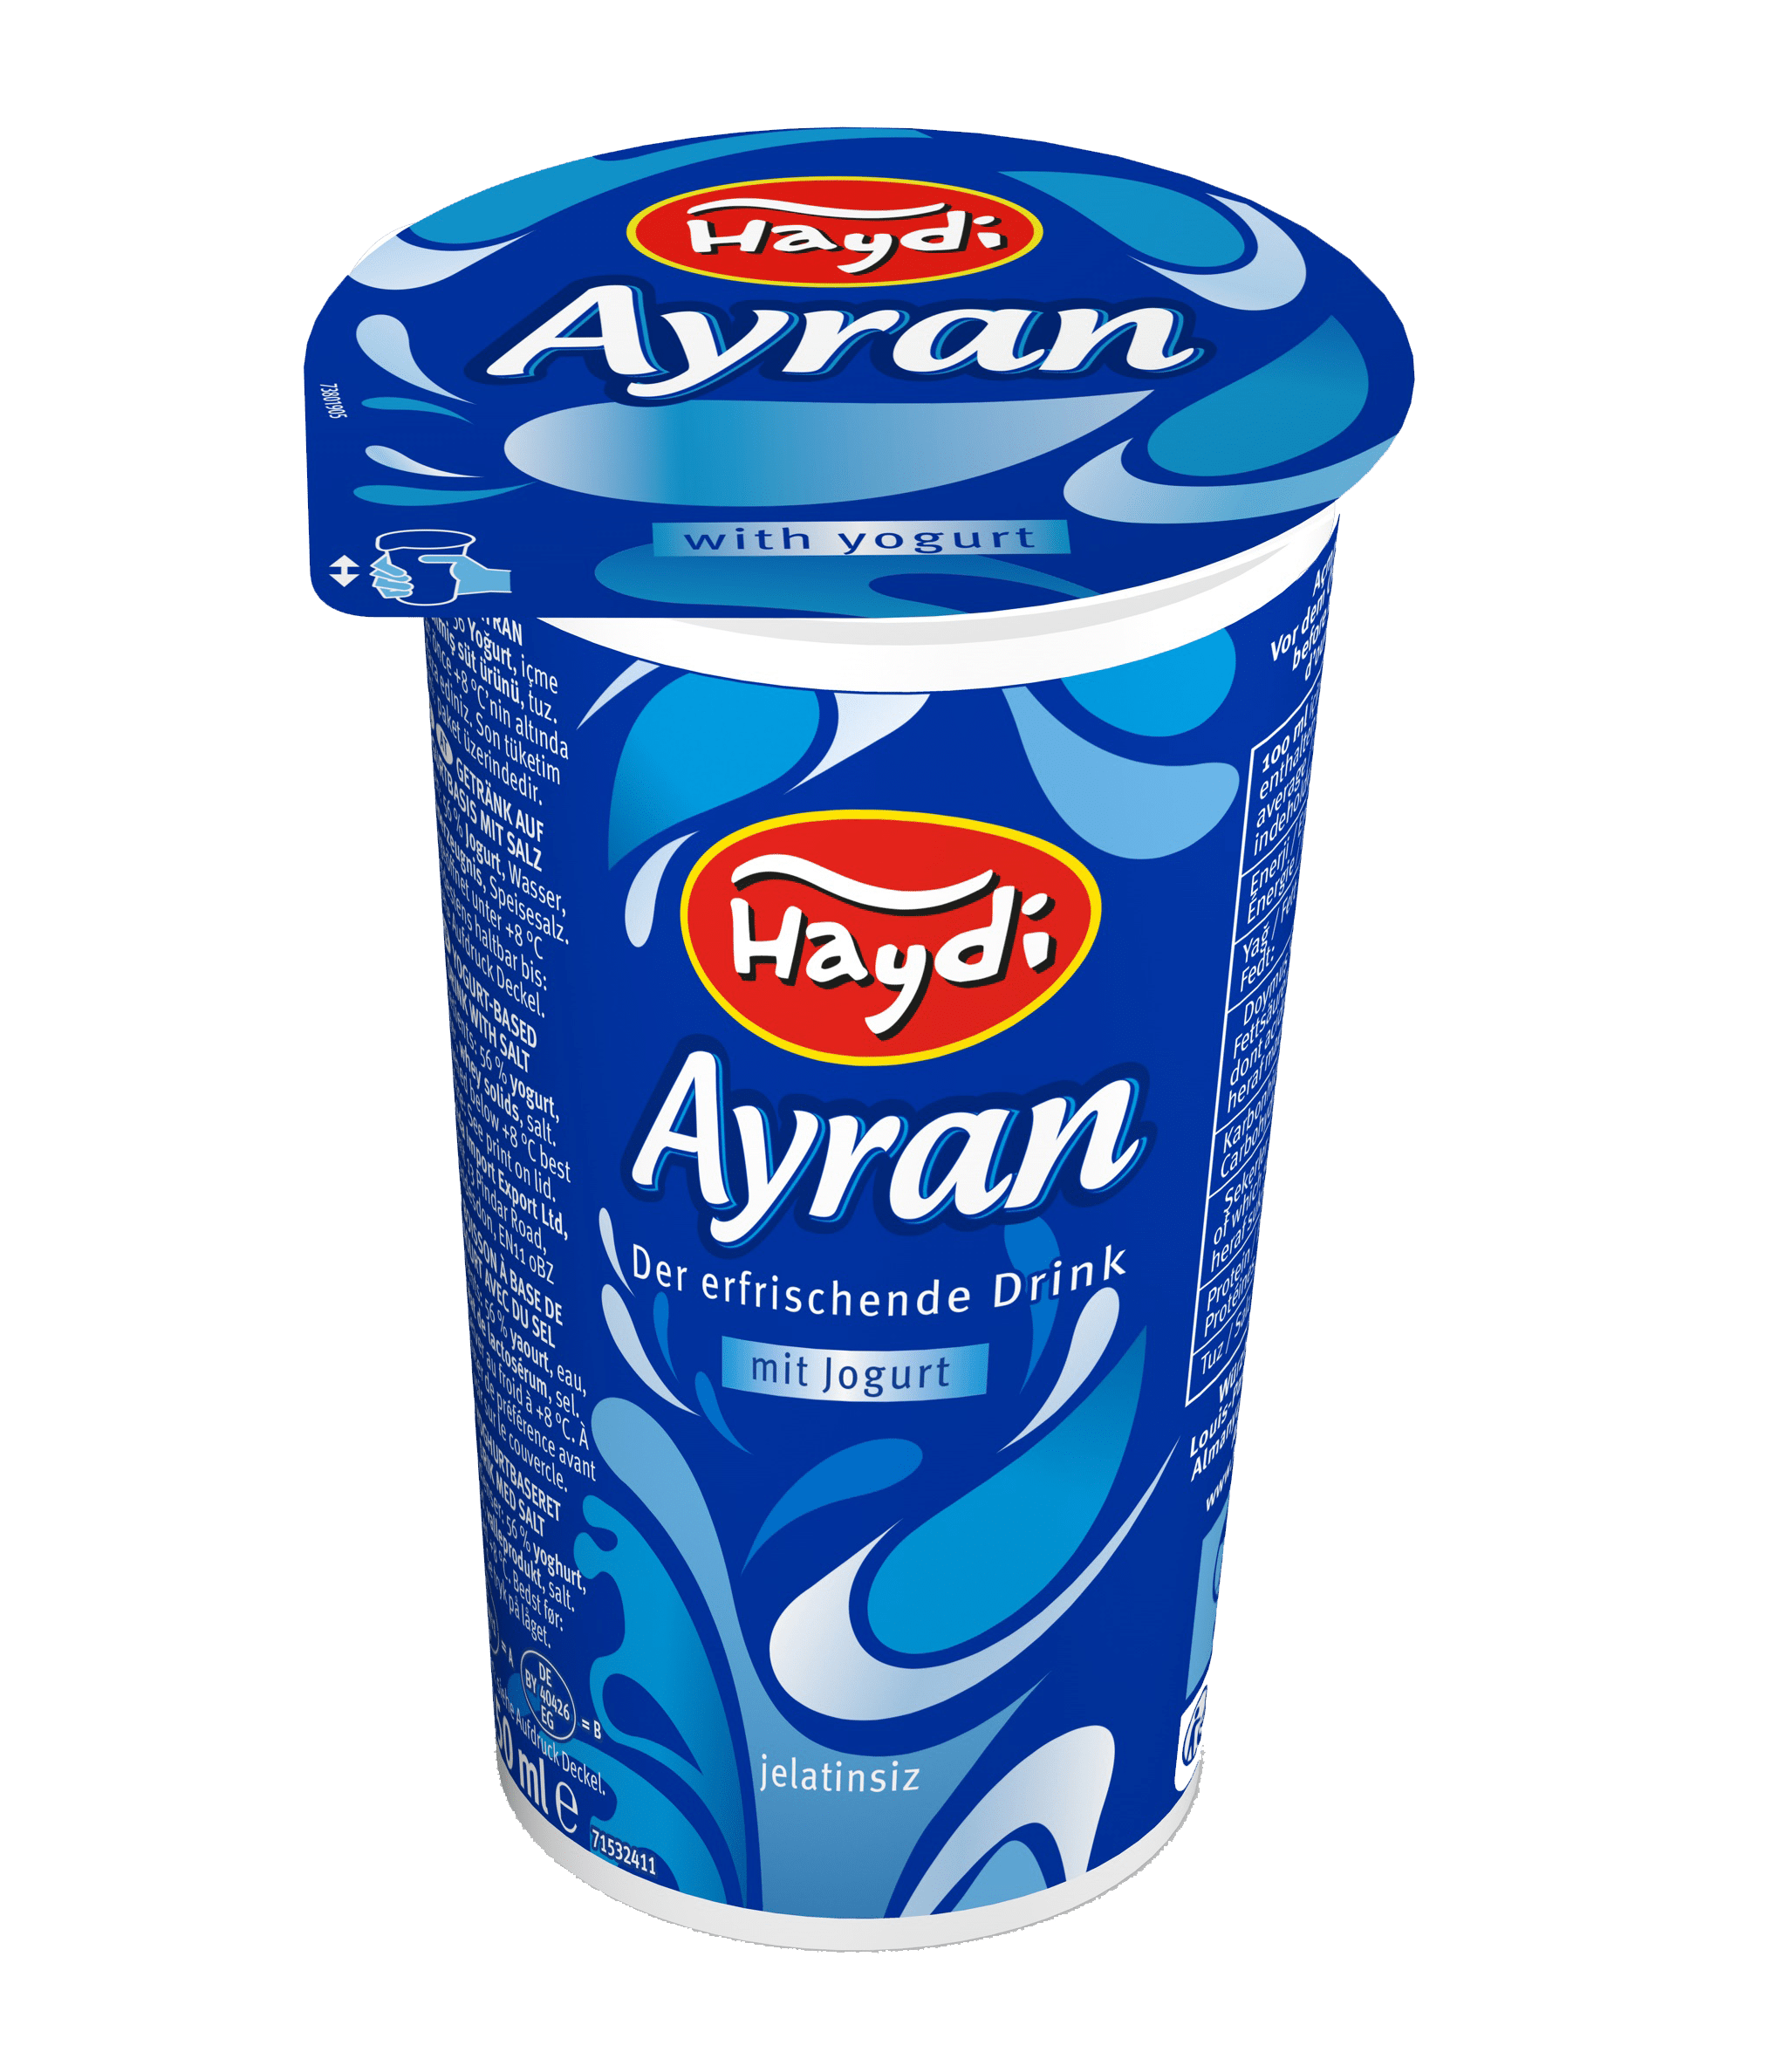 AYRAN TURKISH DRINK